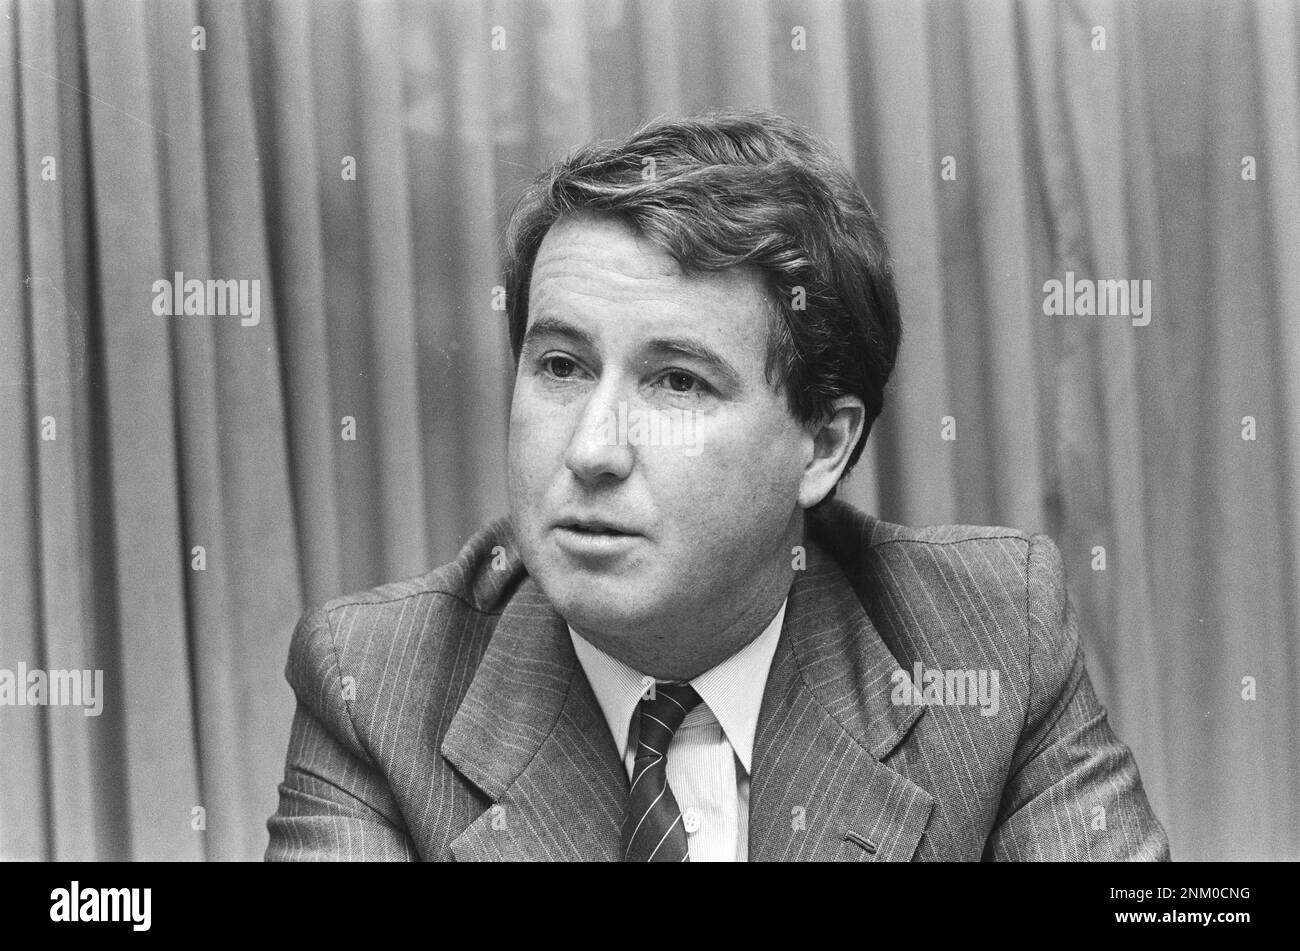 Mr. Oostra (general director of Heineken Netherlands) ca. 1985 Stock Photo